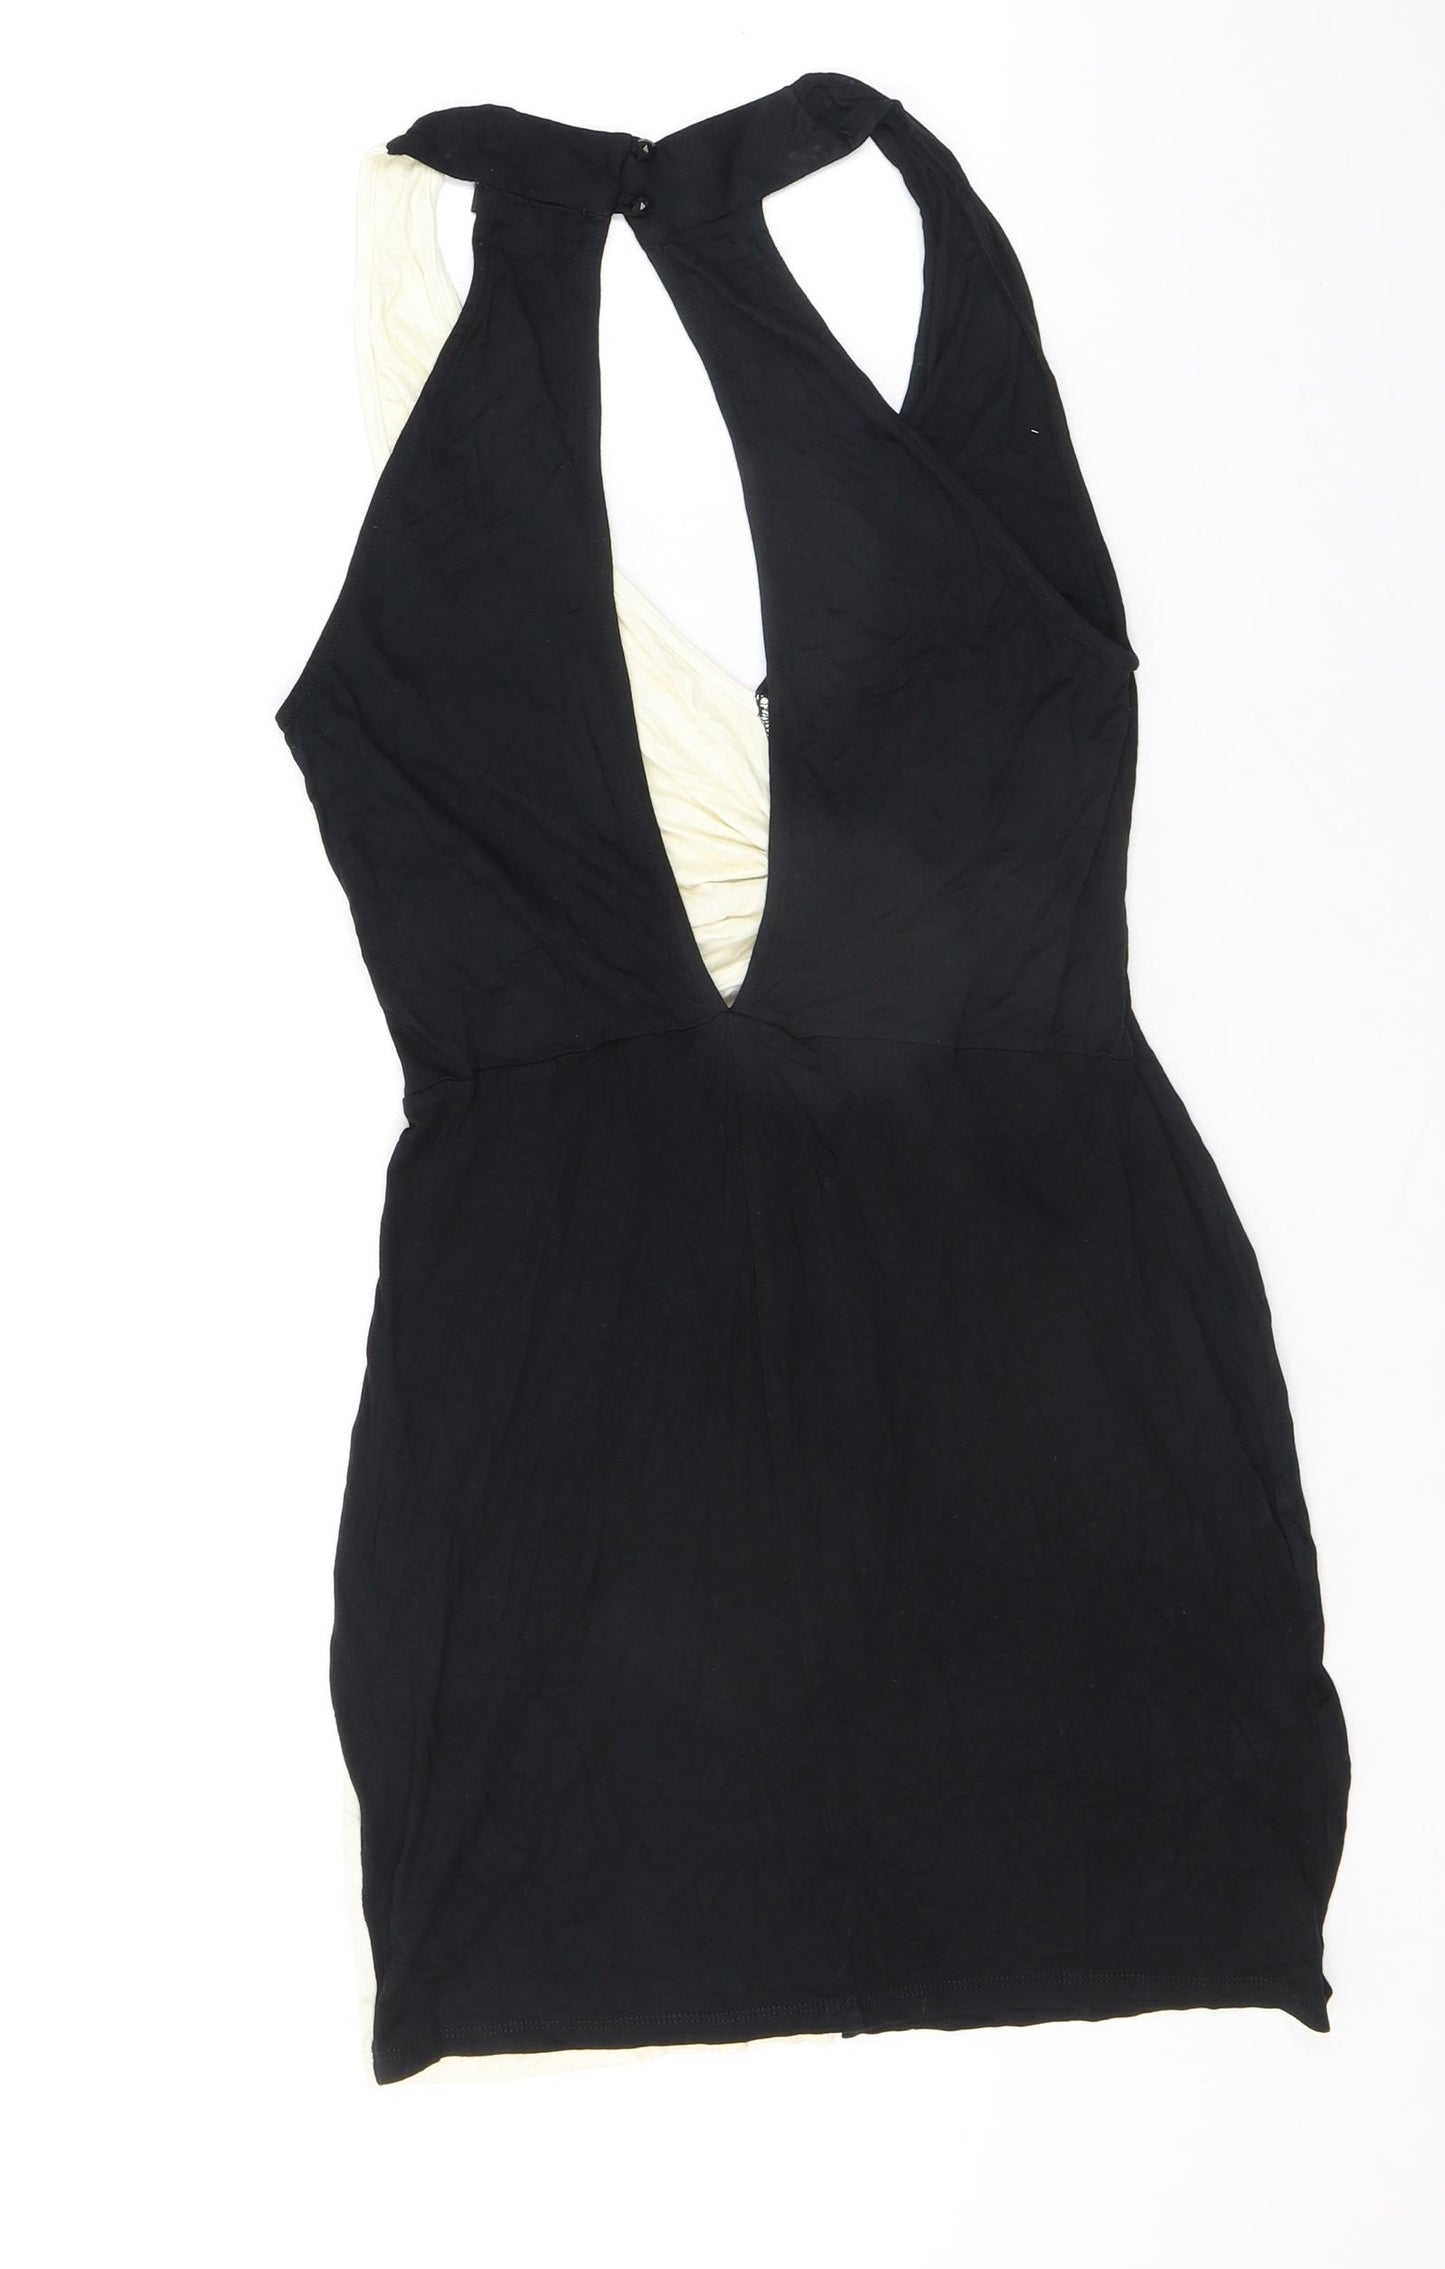 ASOS Womens Black Colourblock Viscose Bodycon Size 10 V-Neck Button